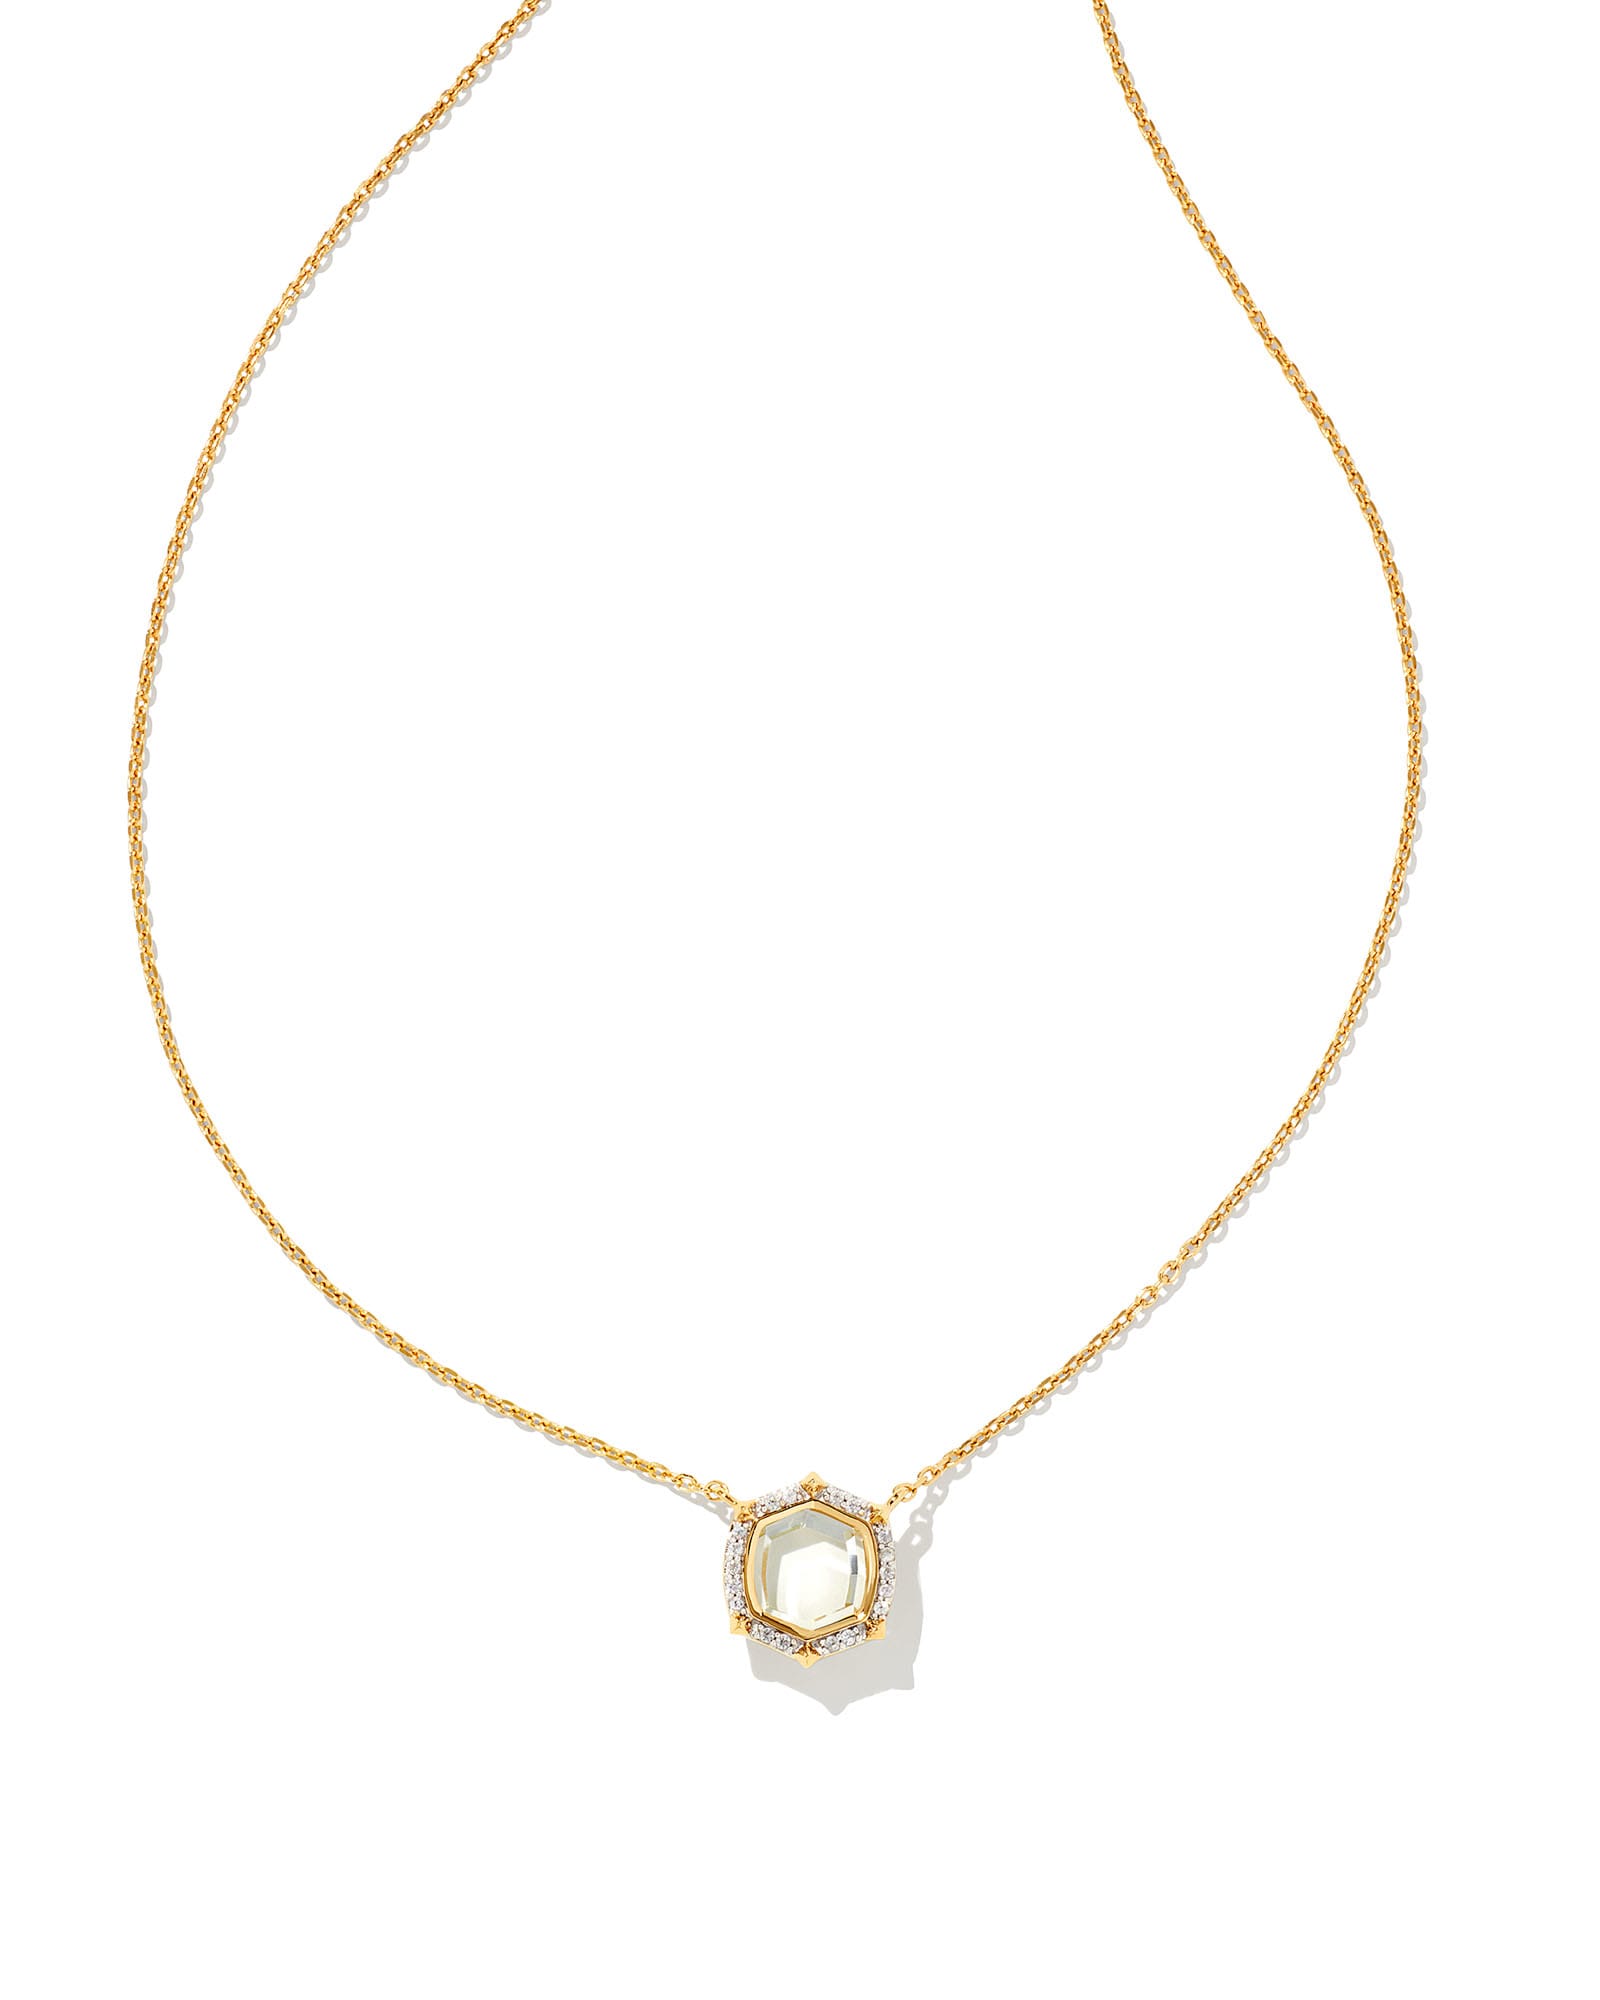 Davis Locket Charm Necklace in 18k Yellow Gold Vermeil